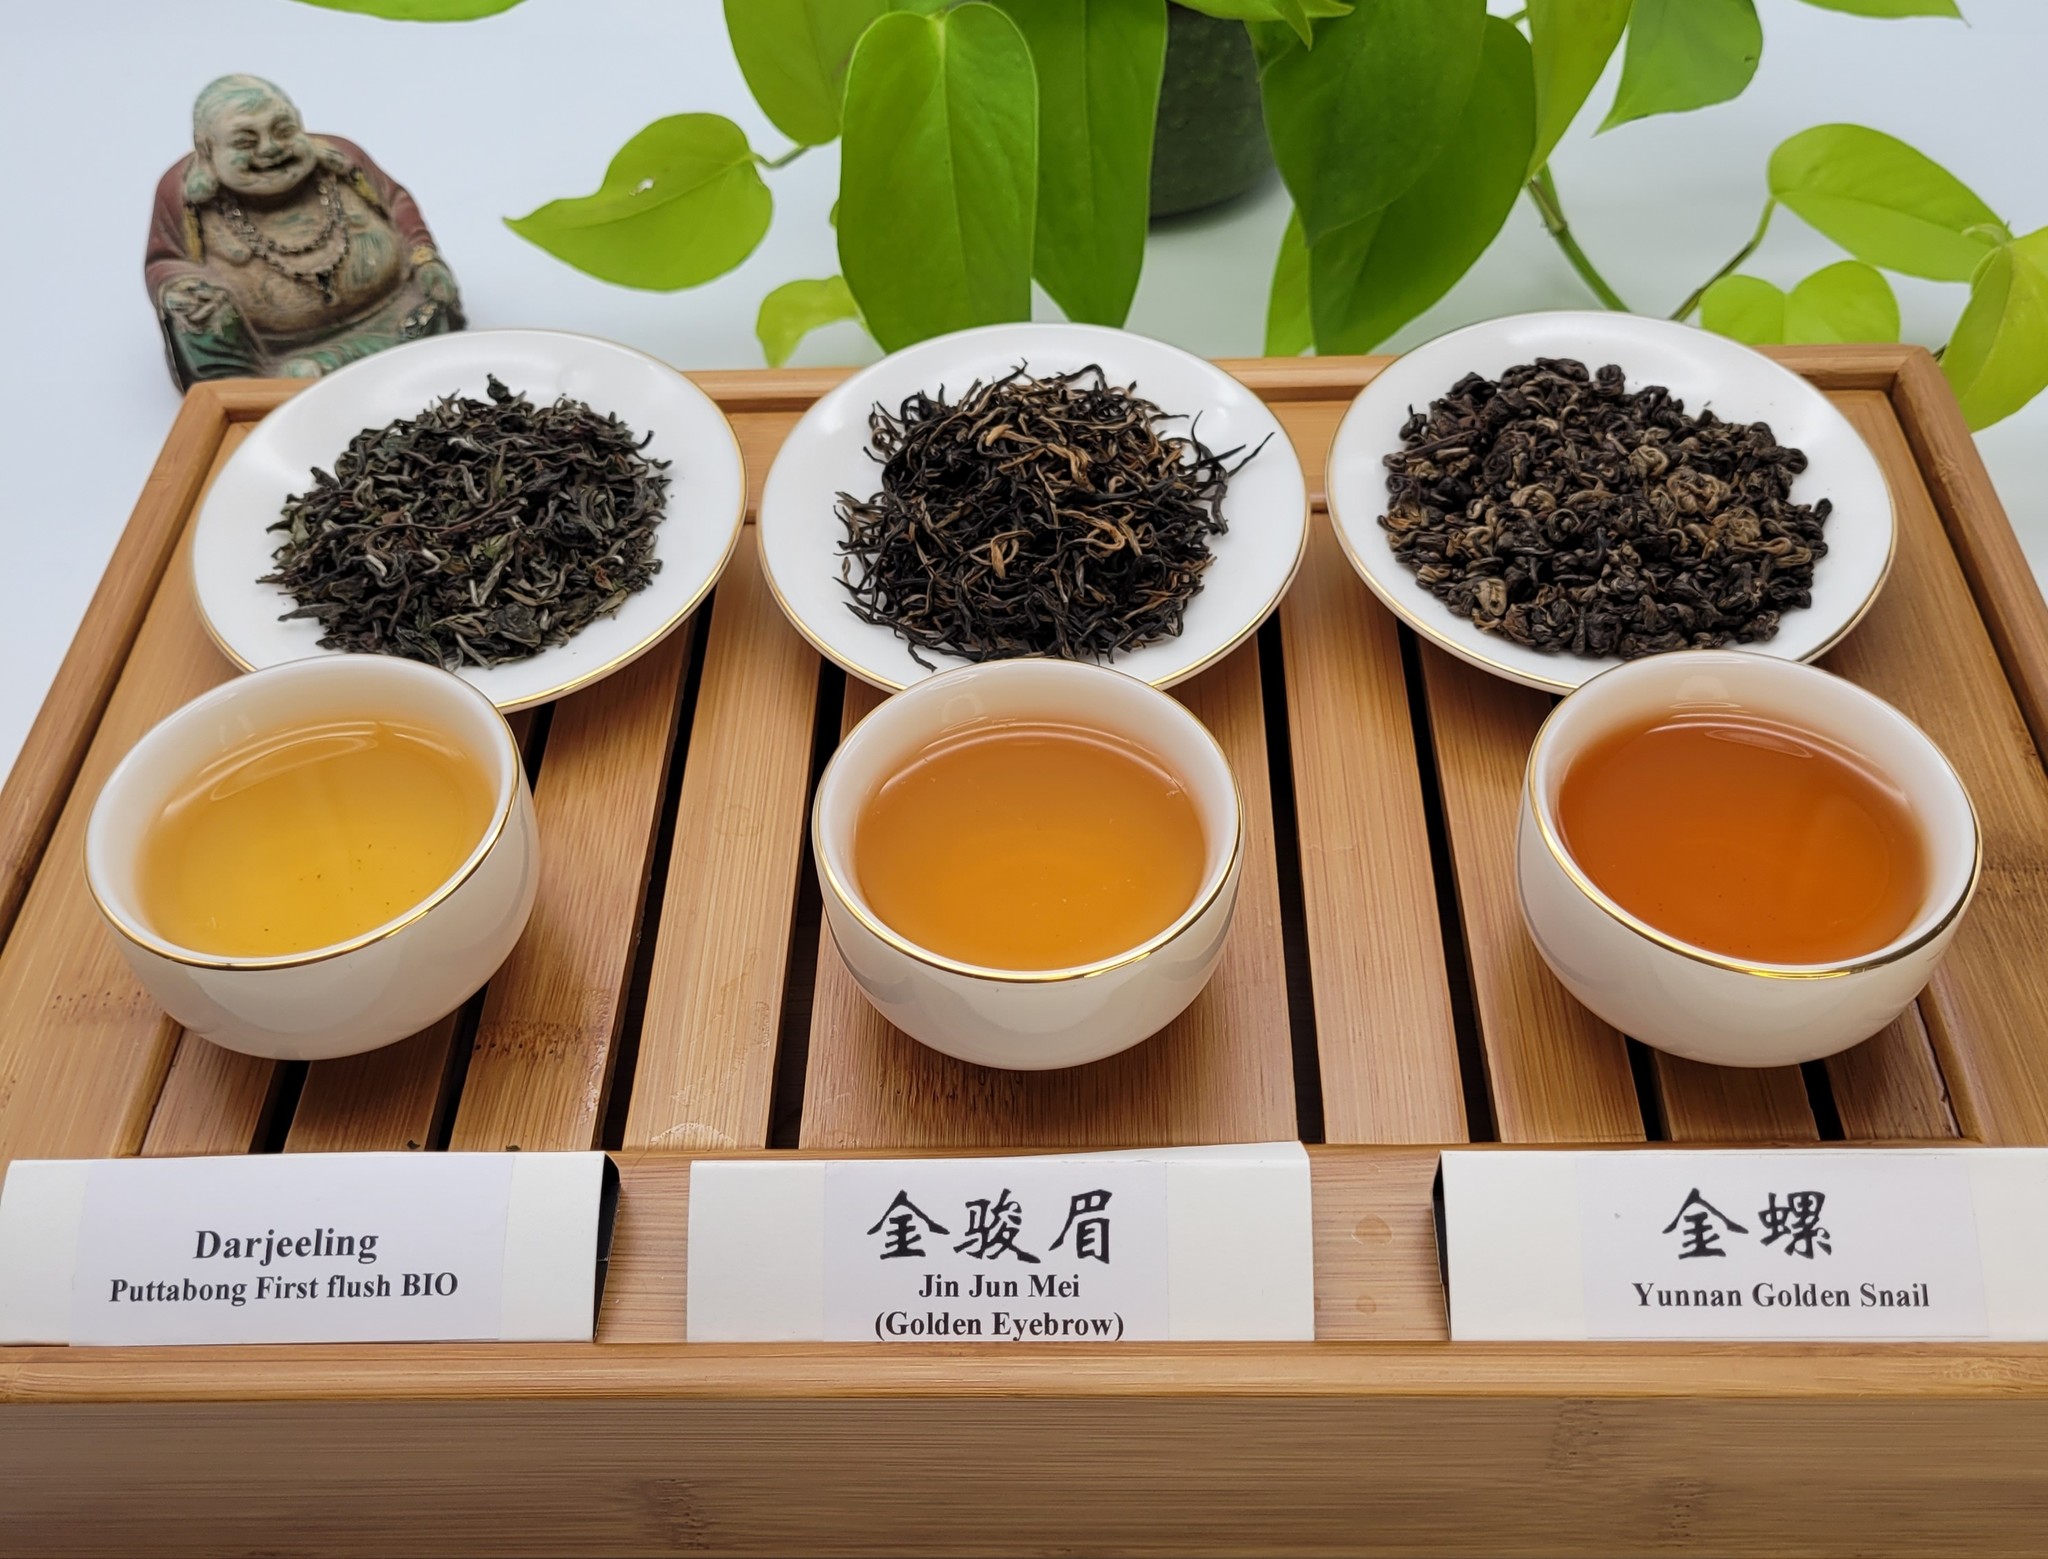 Temps d'infusion des thés : vert, noir, rouge, blanc, aromatisé…